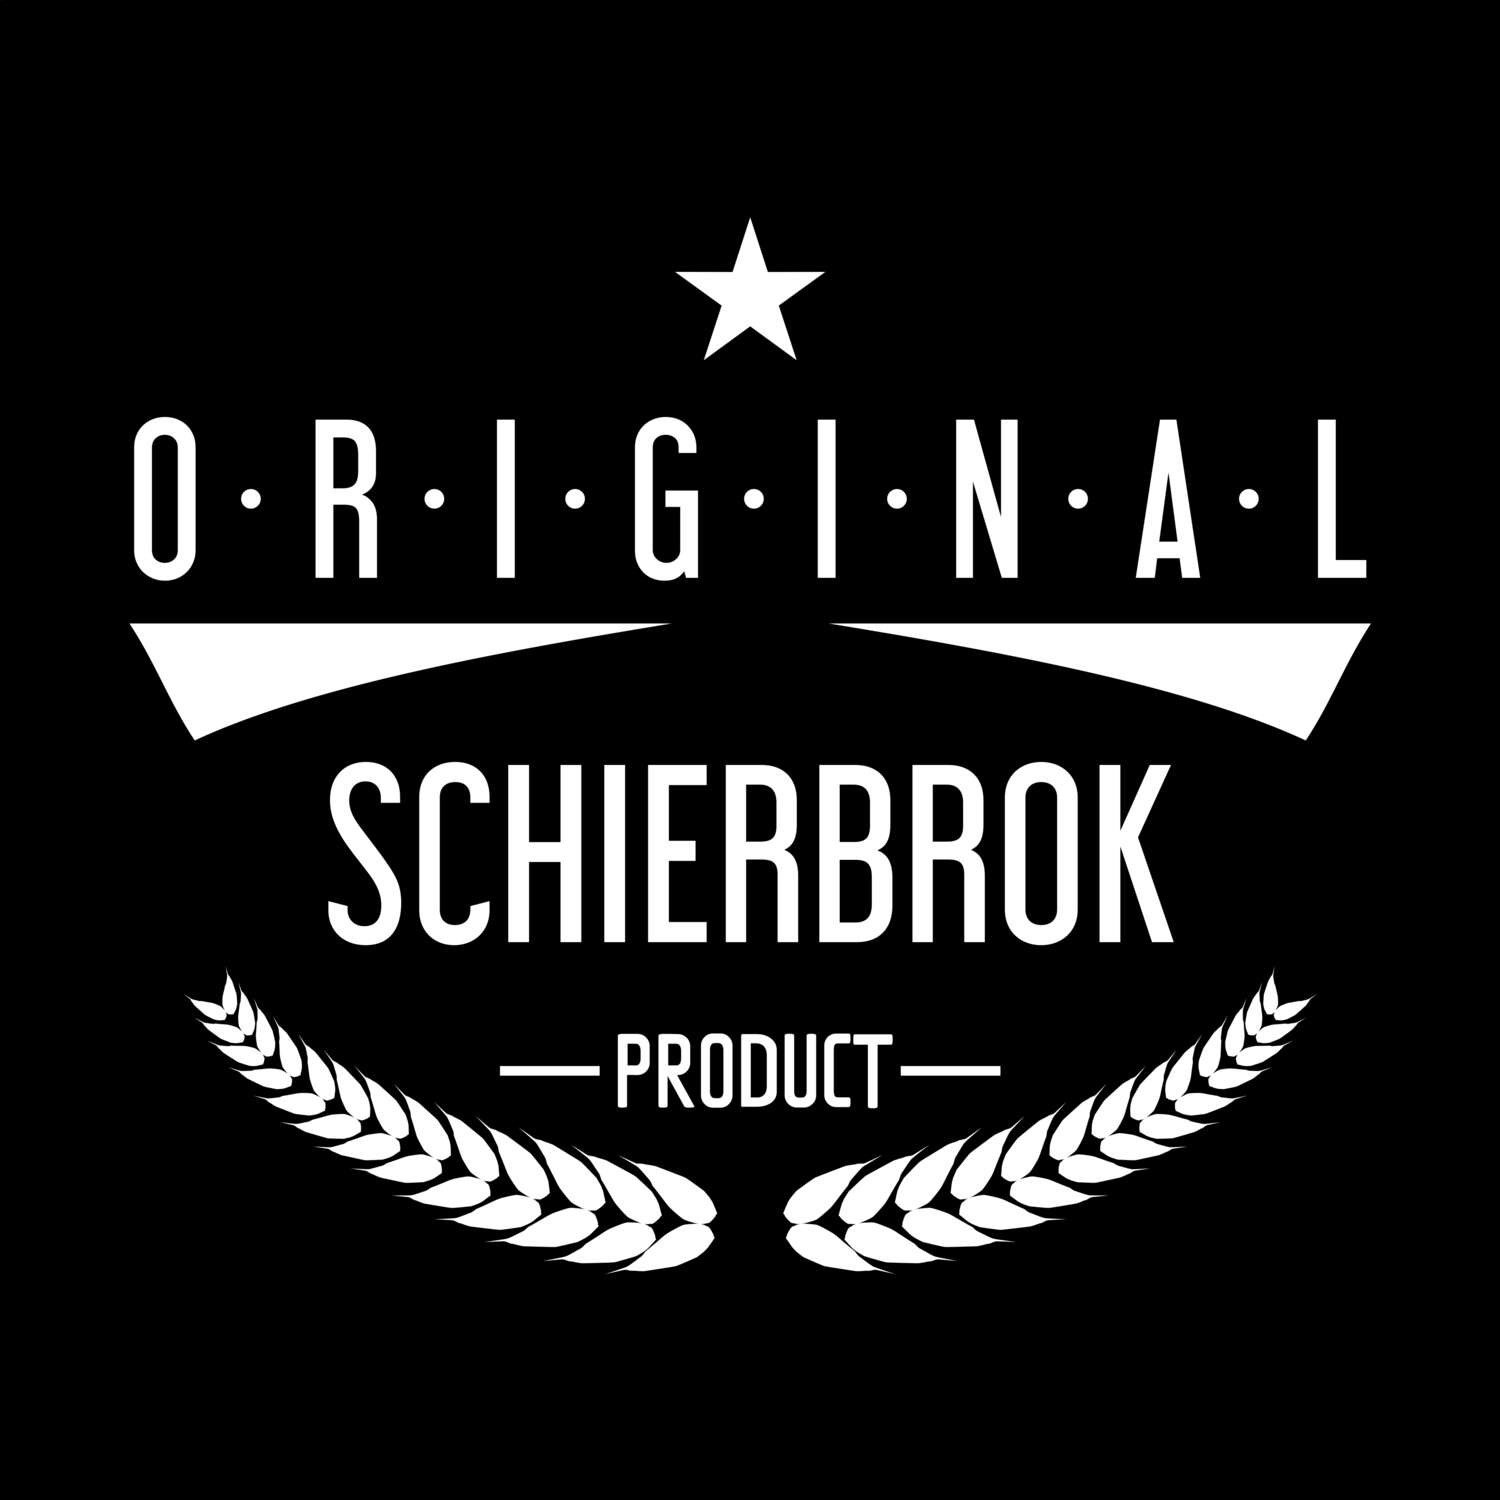 Schierbrok T-Shirt »Original Product«